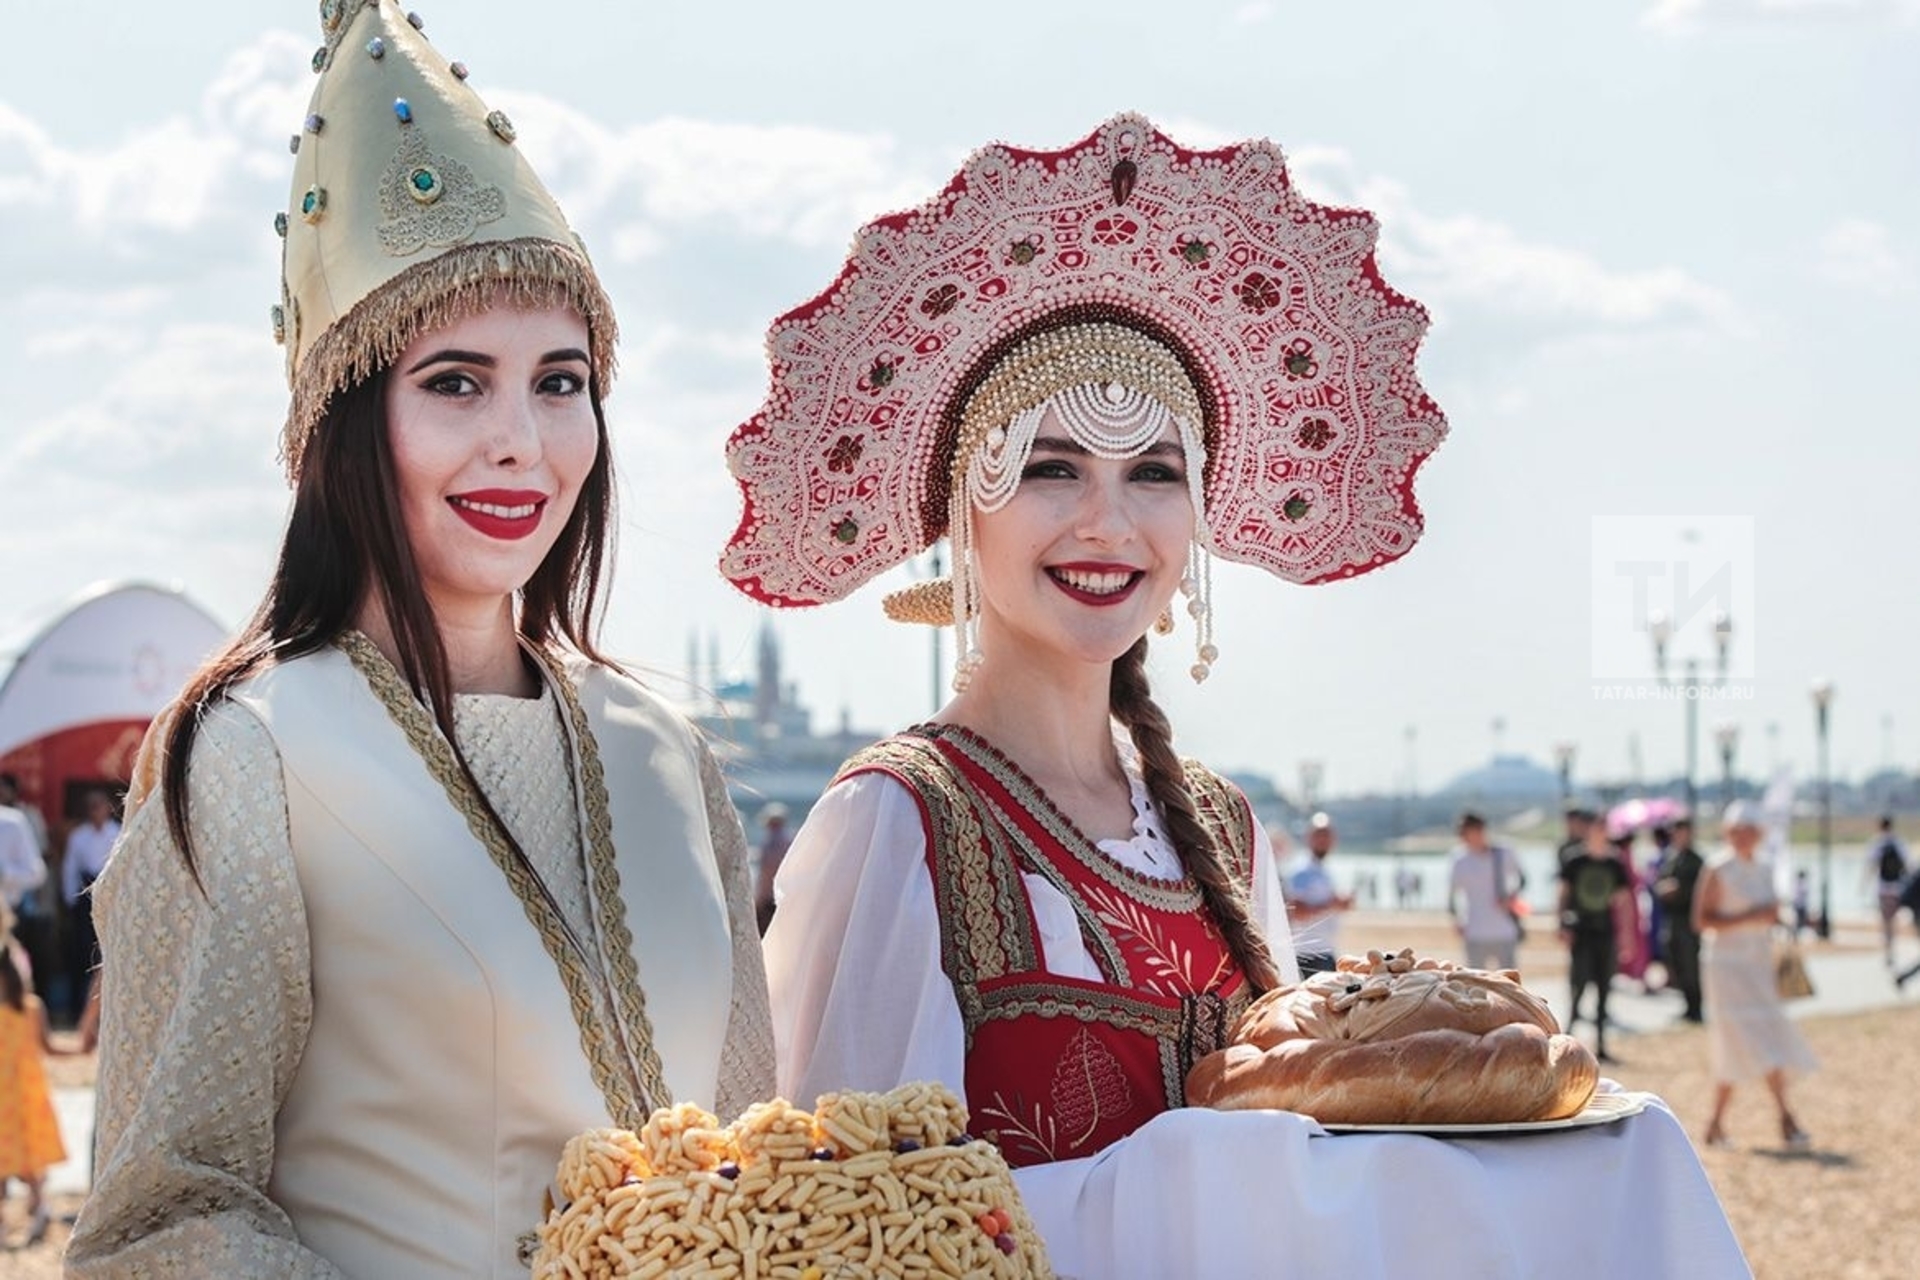 Первая национальная группа. Этно ярмарка. Этно фестиваль. Татарская национальный группа в этно стиле. Этнофестиваль в грузинском стиле.